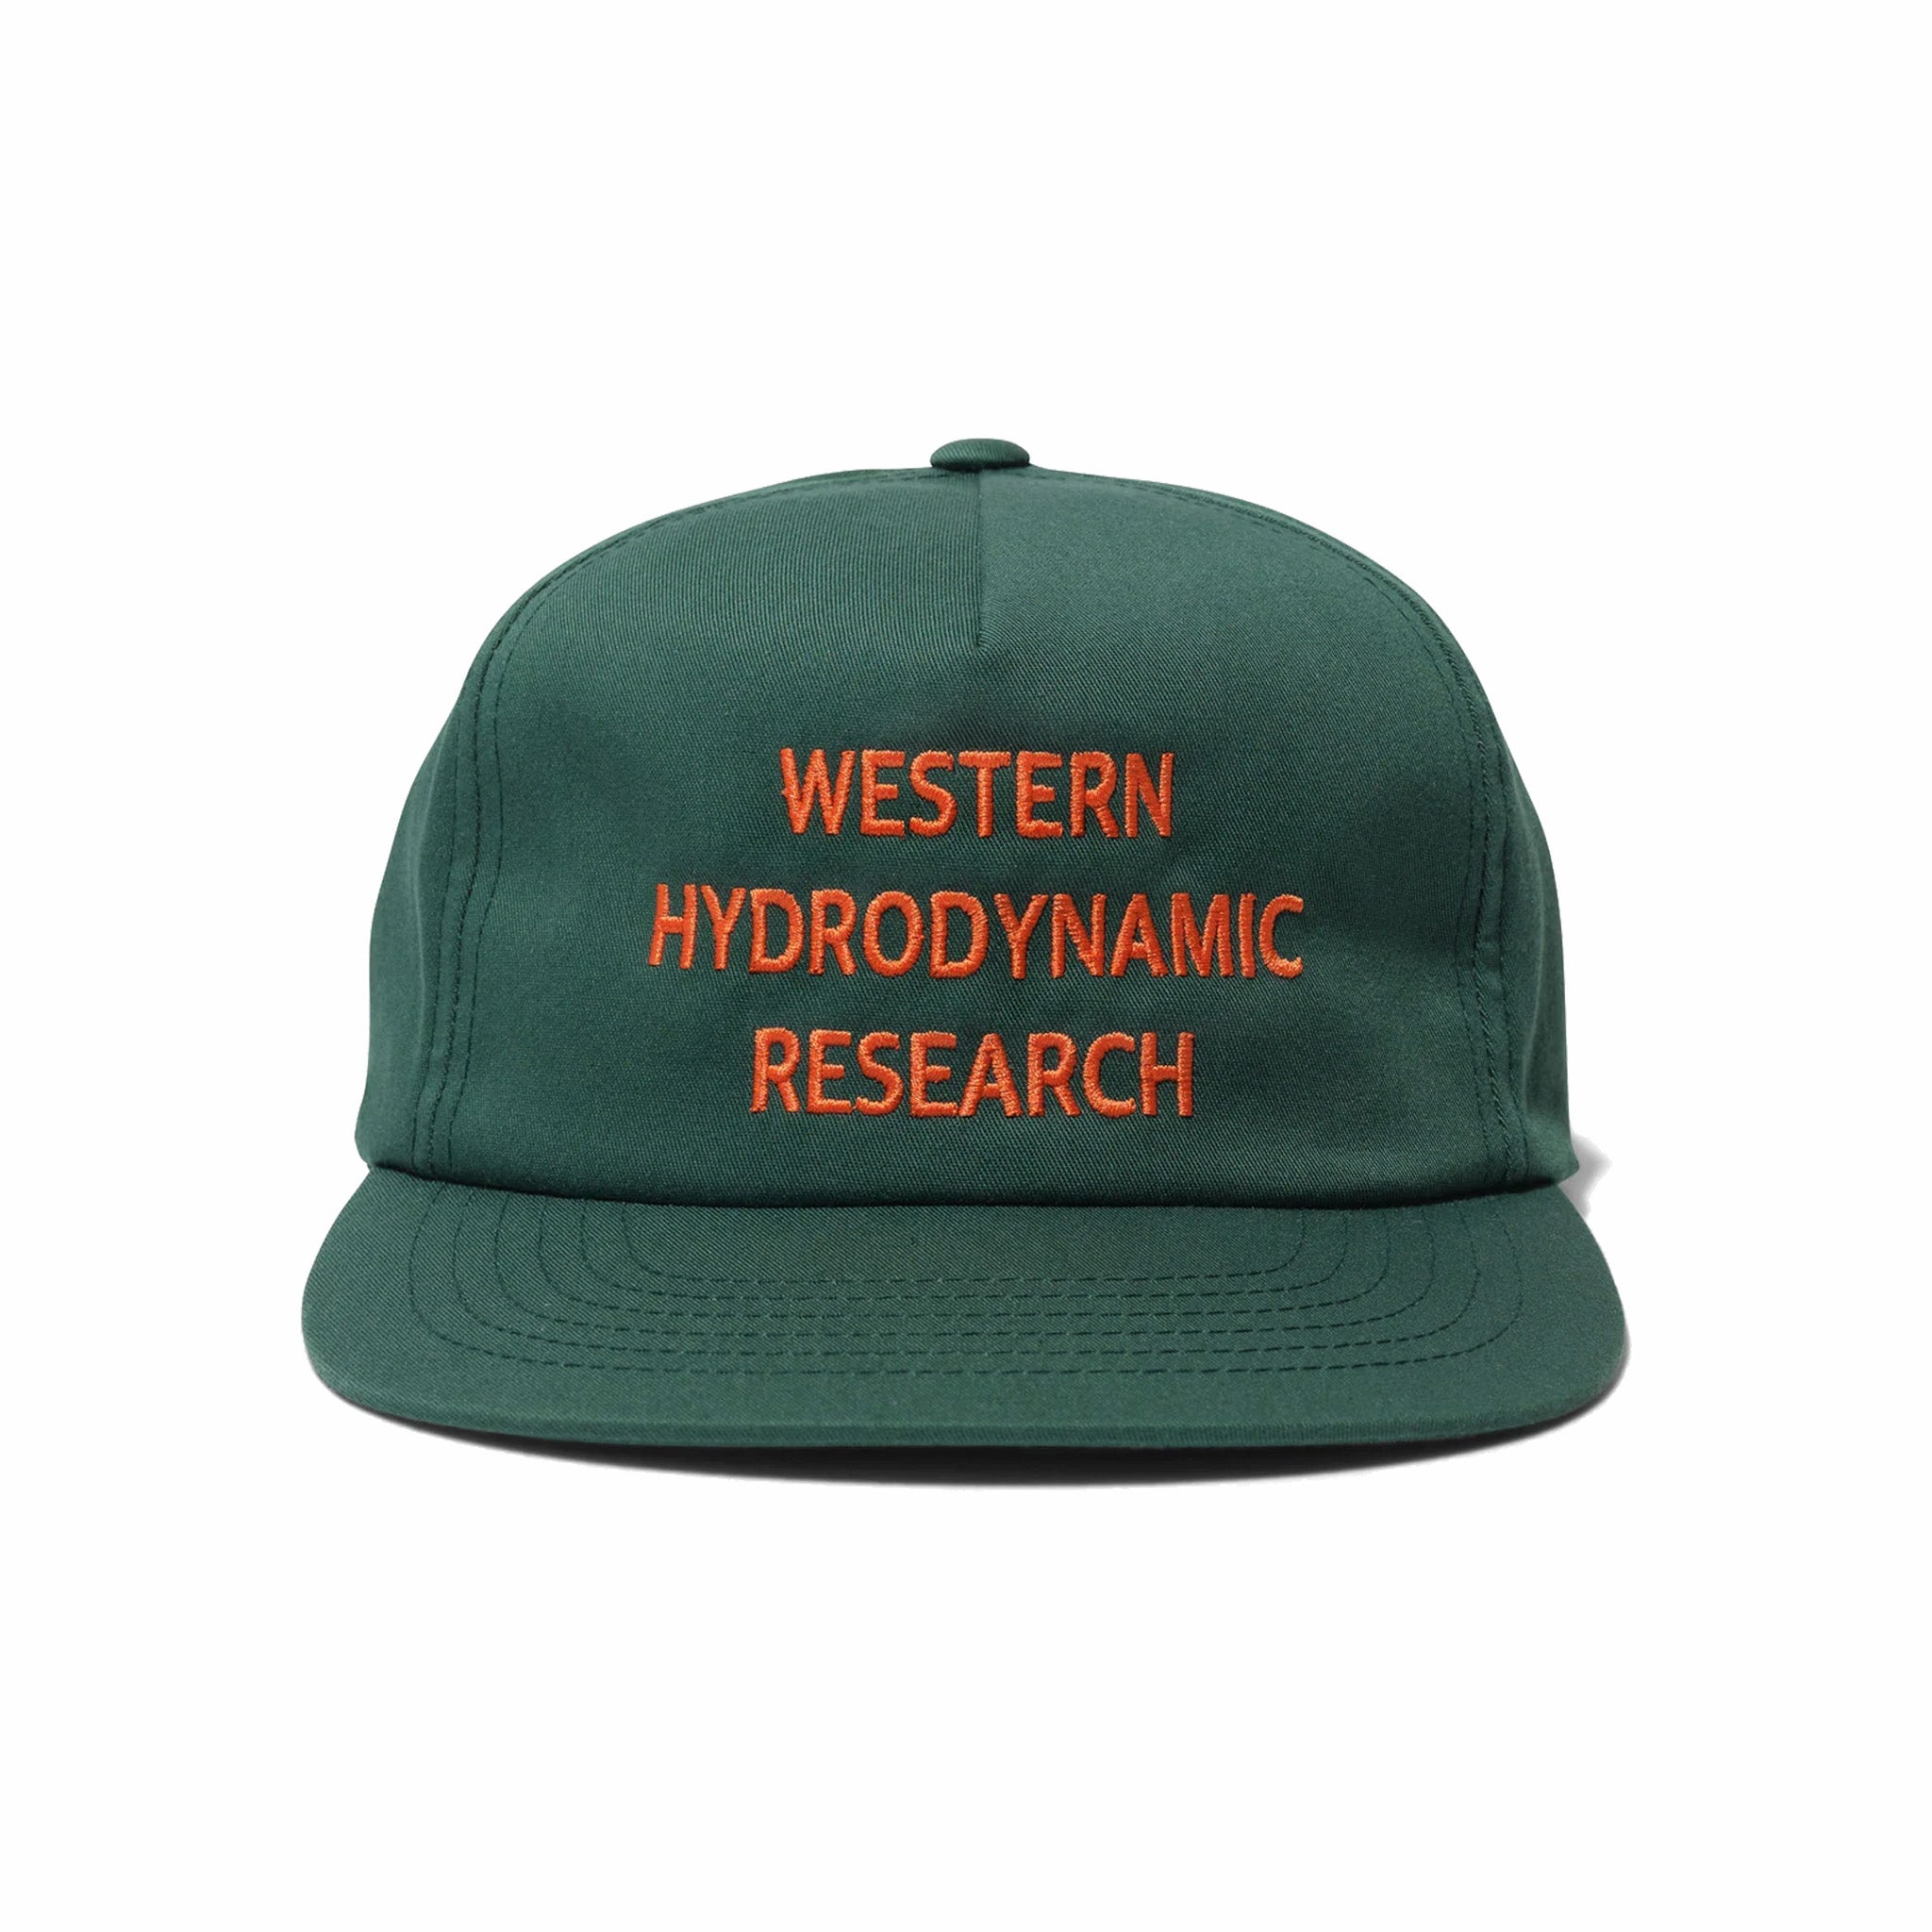 Ricerca idrodinamica occidentale, Cappello promozionale Western Hydrodynamic Research (oliva/arancio)